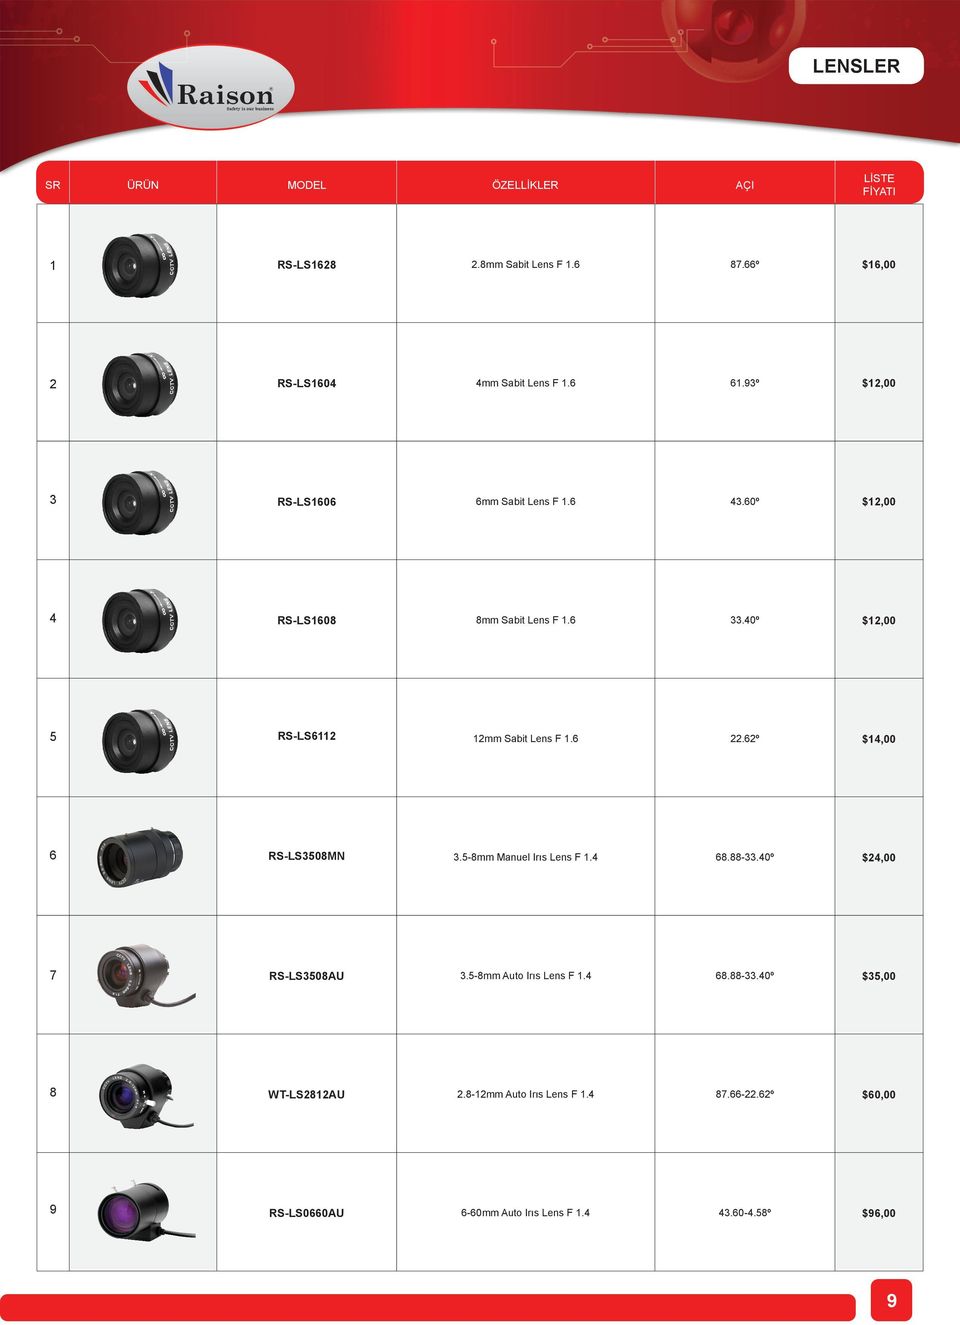 40º $1,00 5 RS-LS611 1mm Sabit Lens F 1.6.6º $14,00 6 RS-LS3508MN 3.5-8mm Manuel Irıs Lens F 1.4 68.88-33.